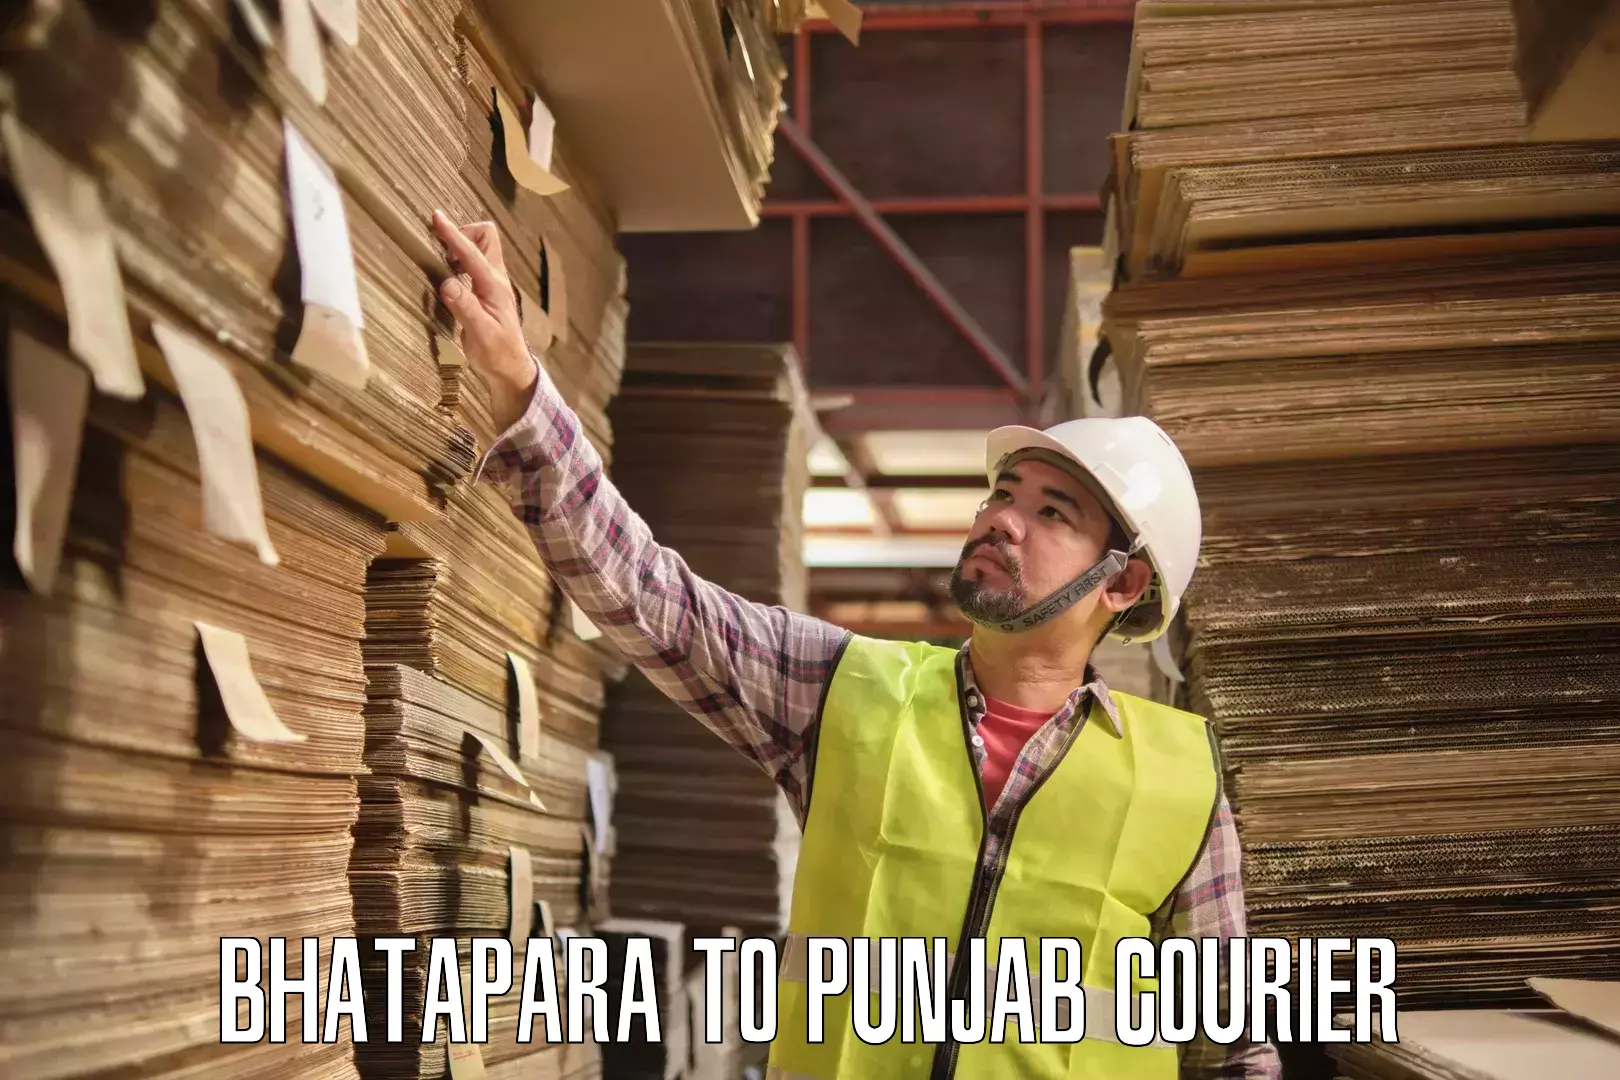 Supply chain efficiency Bhatapara to Faridkot